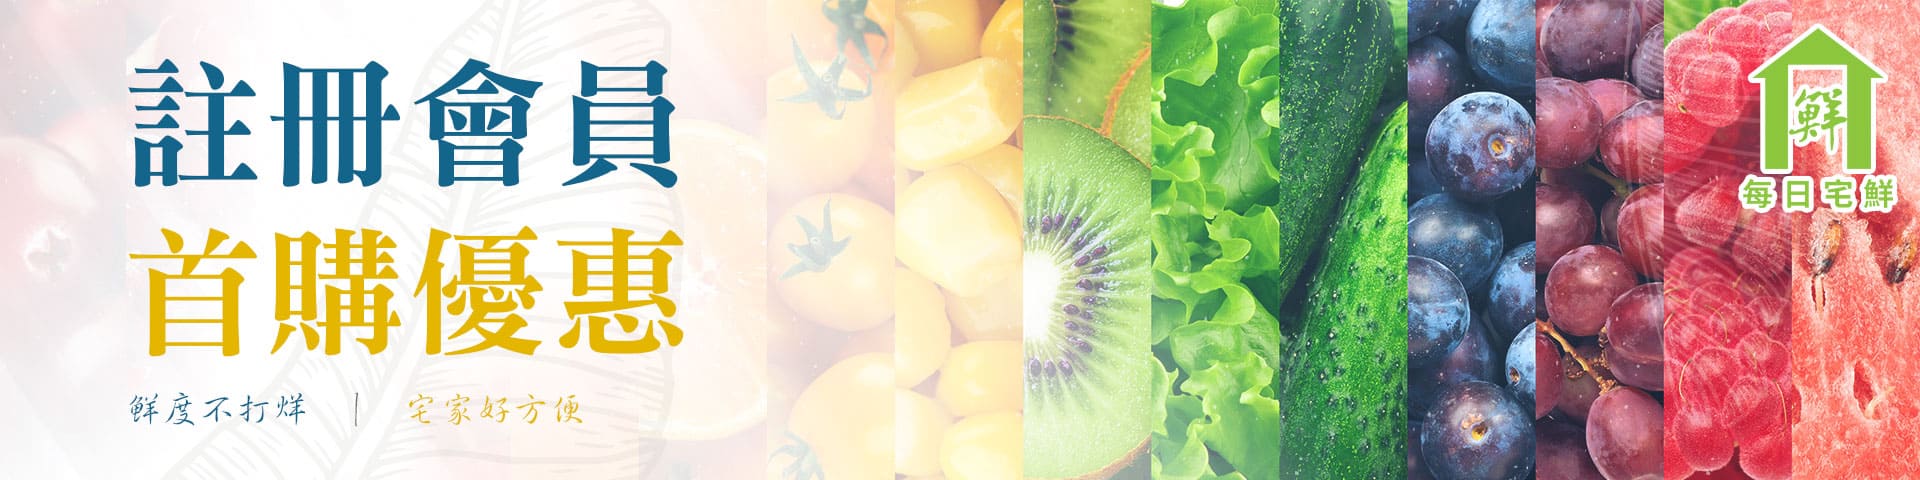 註冊會員-臺灣50年水果蔬果專家 | 優質蔬果、水果禮盒、當季水果推薦